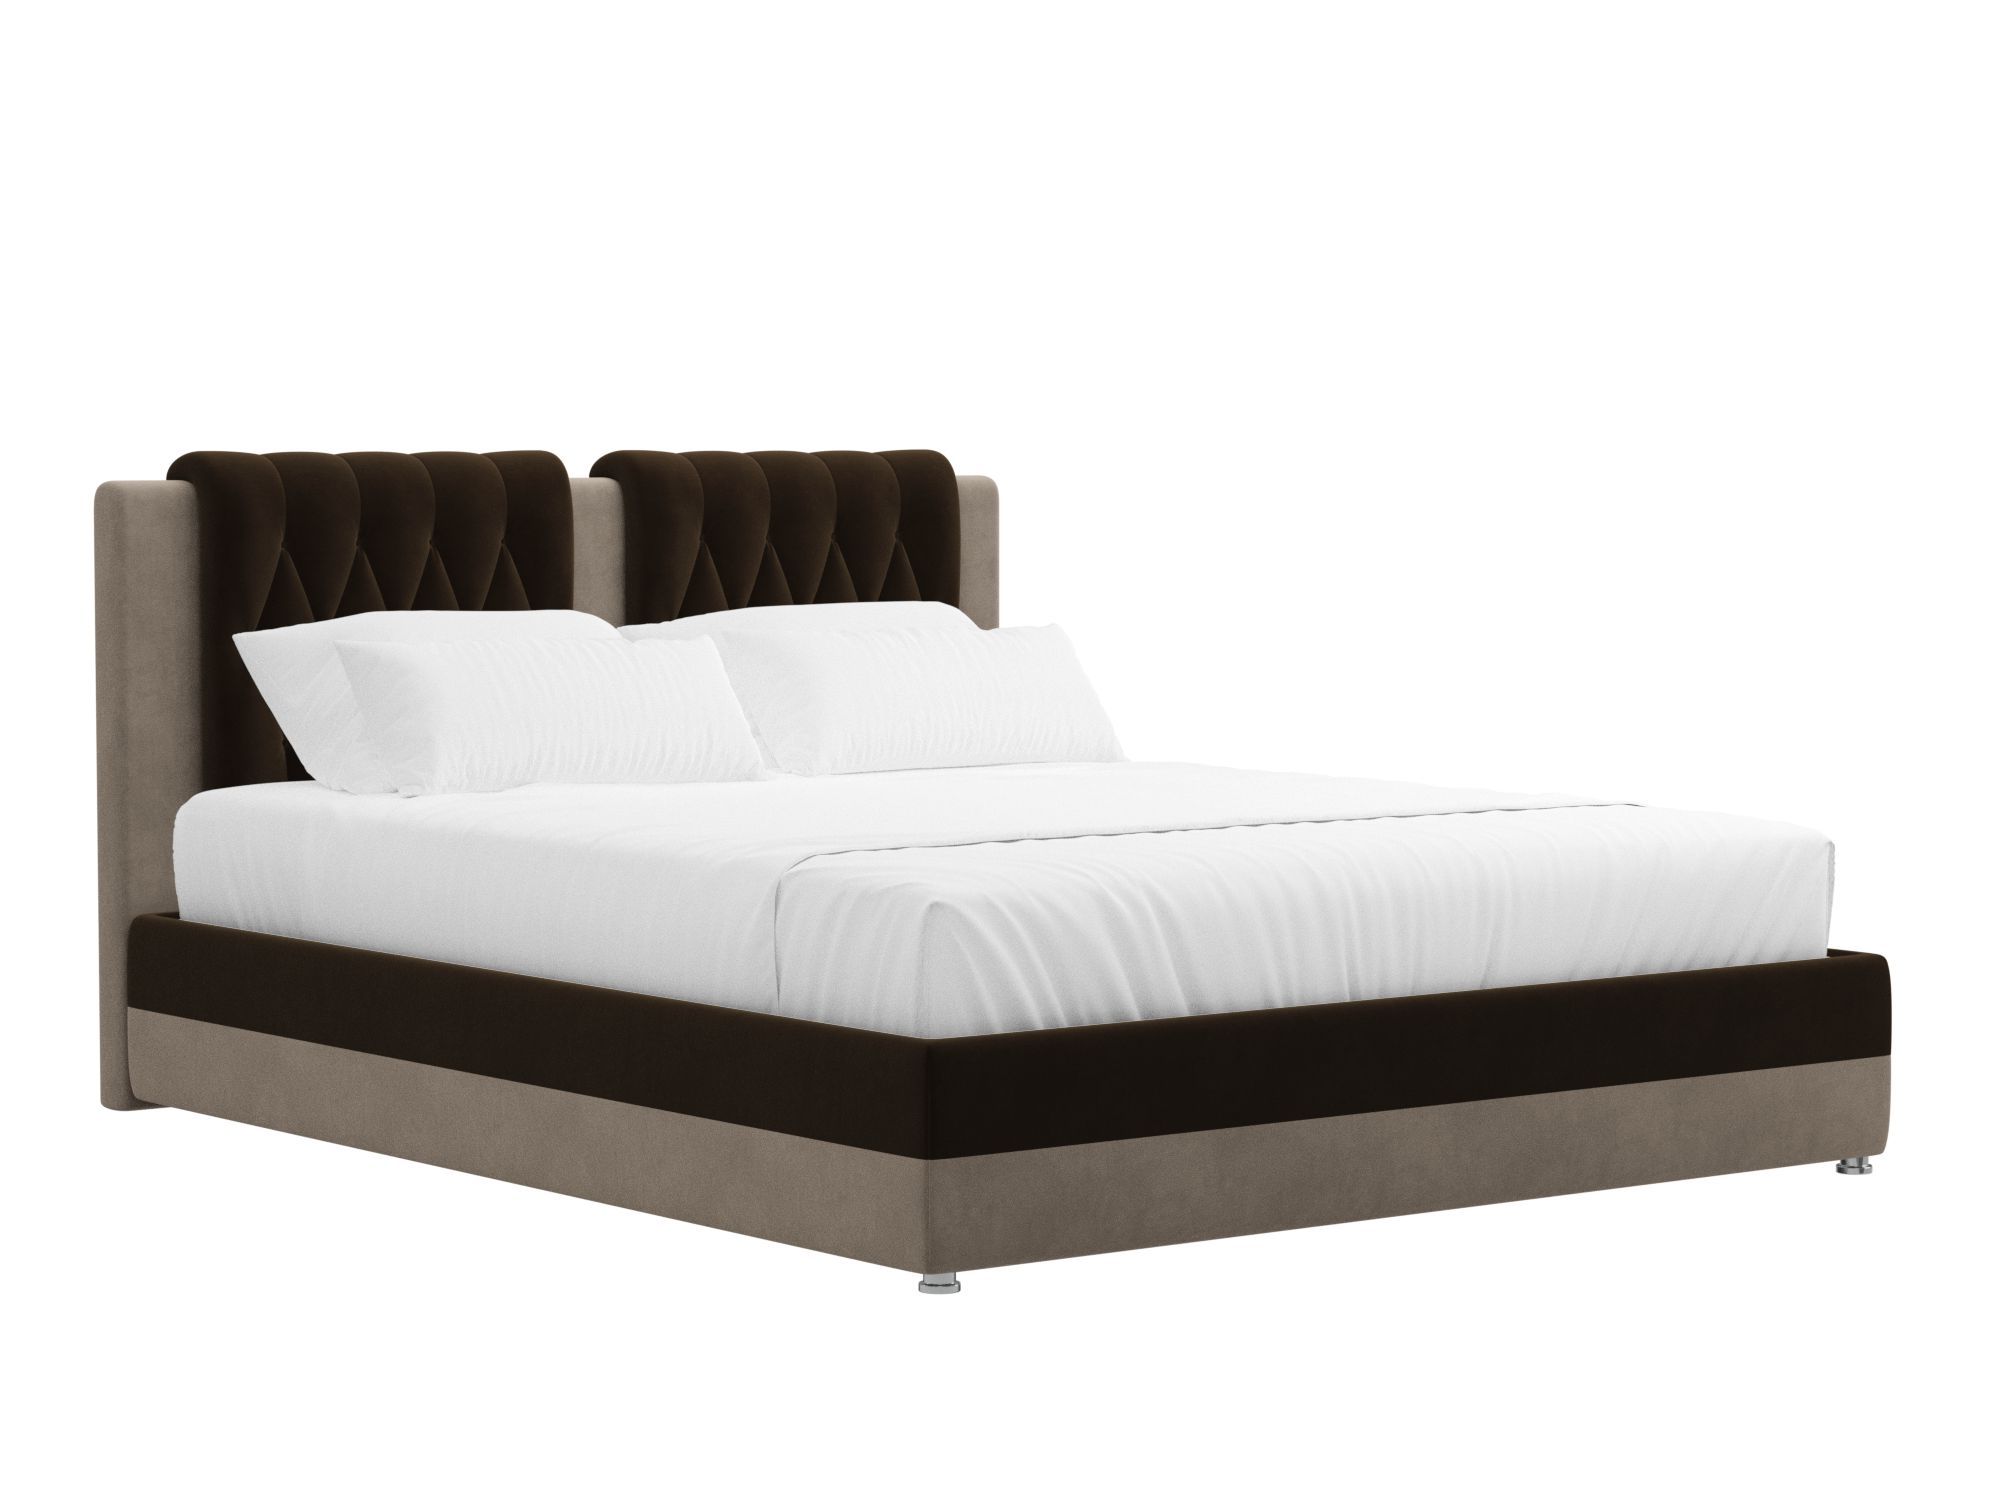 Кровать Камилла (160x200) Коричневый, Бежевый, ЛДСП кровать уют 160х200 дуб молочный бежевый коричневый темный лдсп